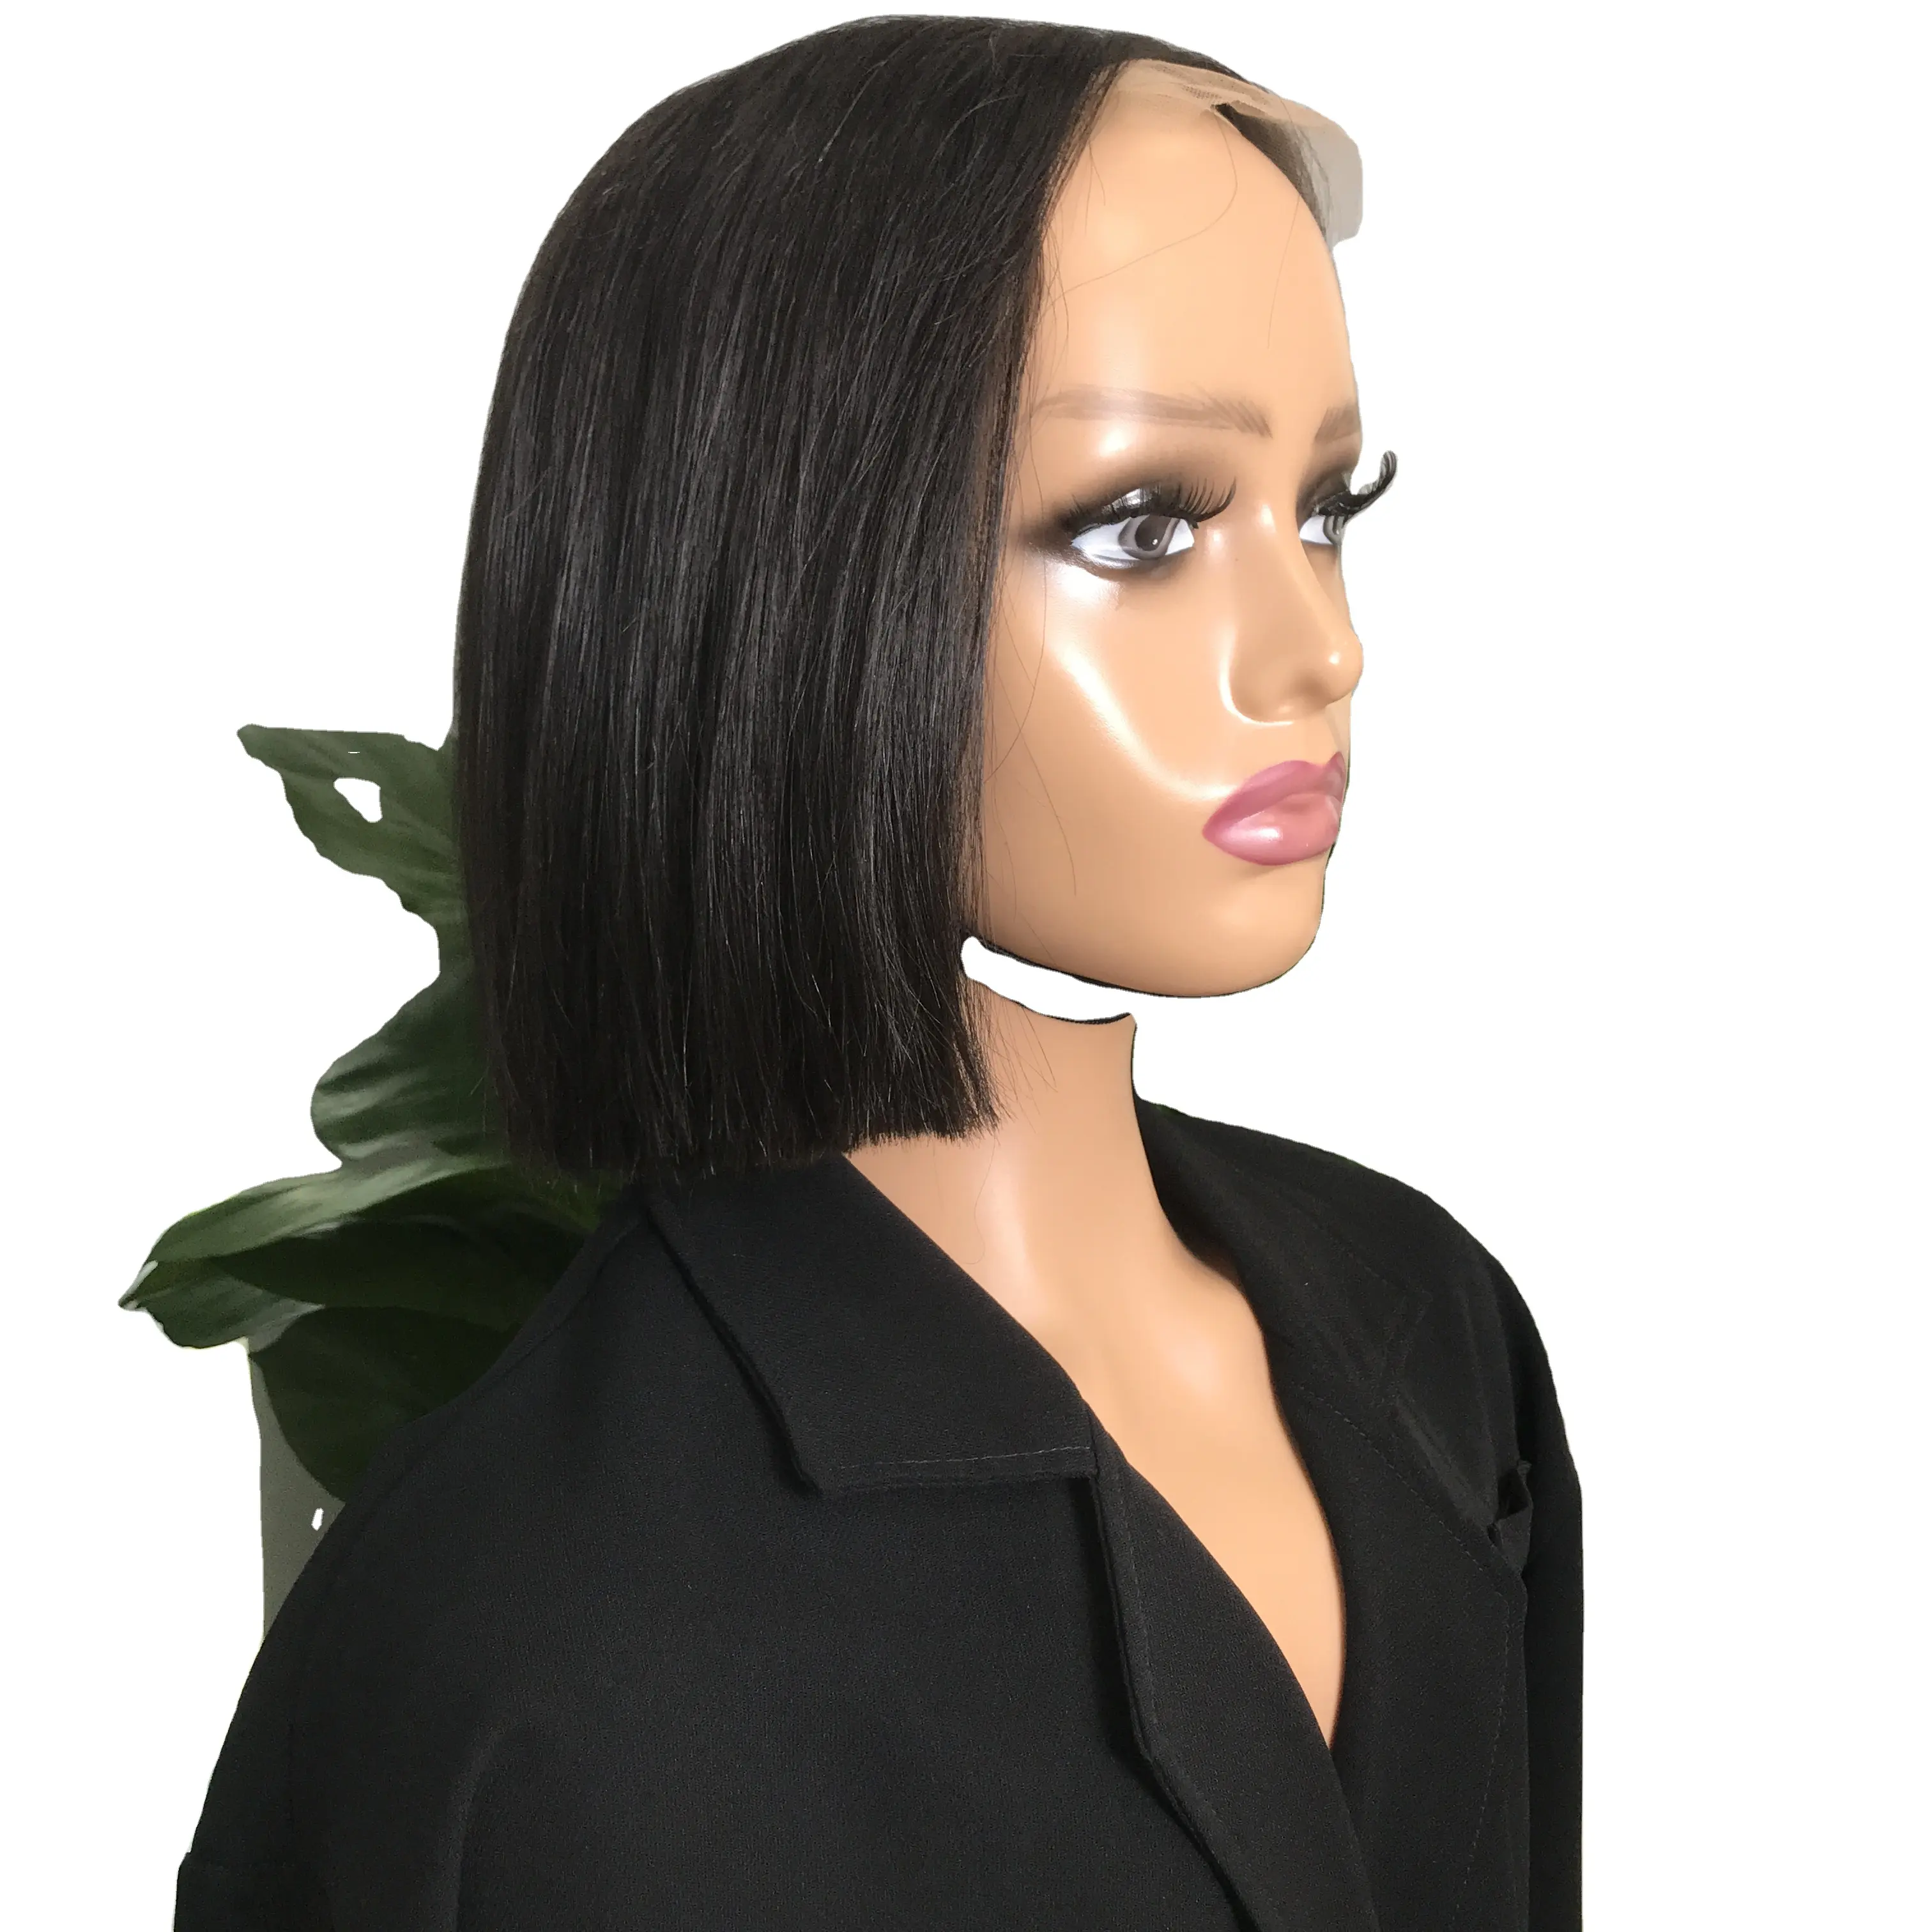 Vendita all'ingrosso di capelli umani parrucca bob extension Bone direttamente dal vietnam nuovo stile personalizza il Design 100% capelli umani vendita calda